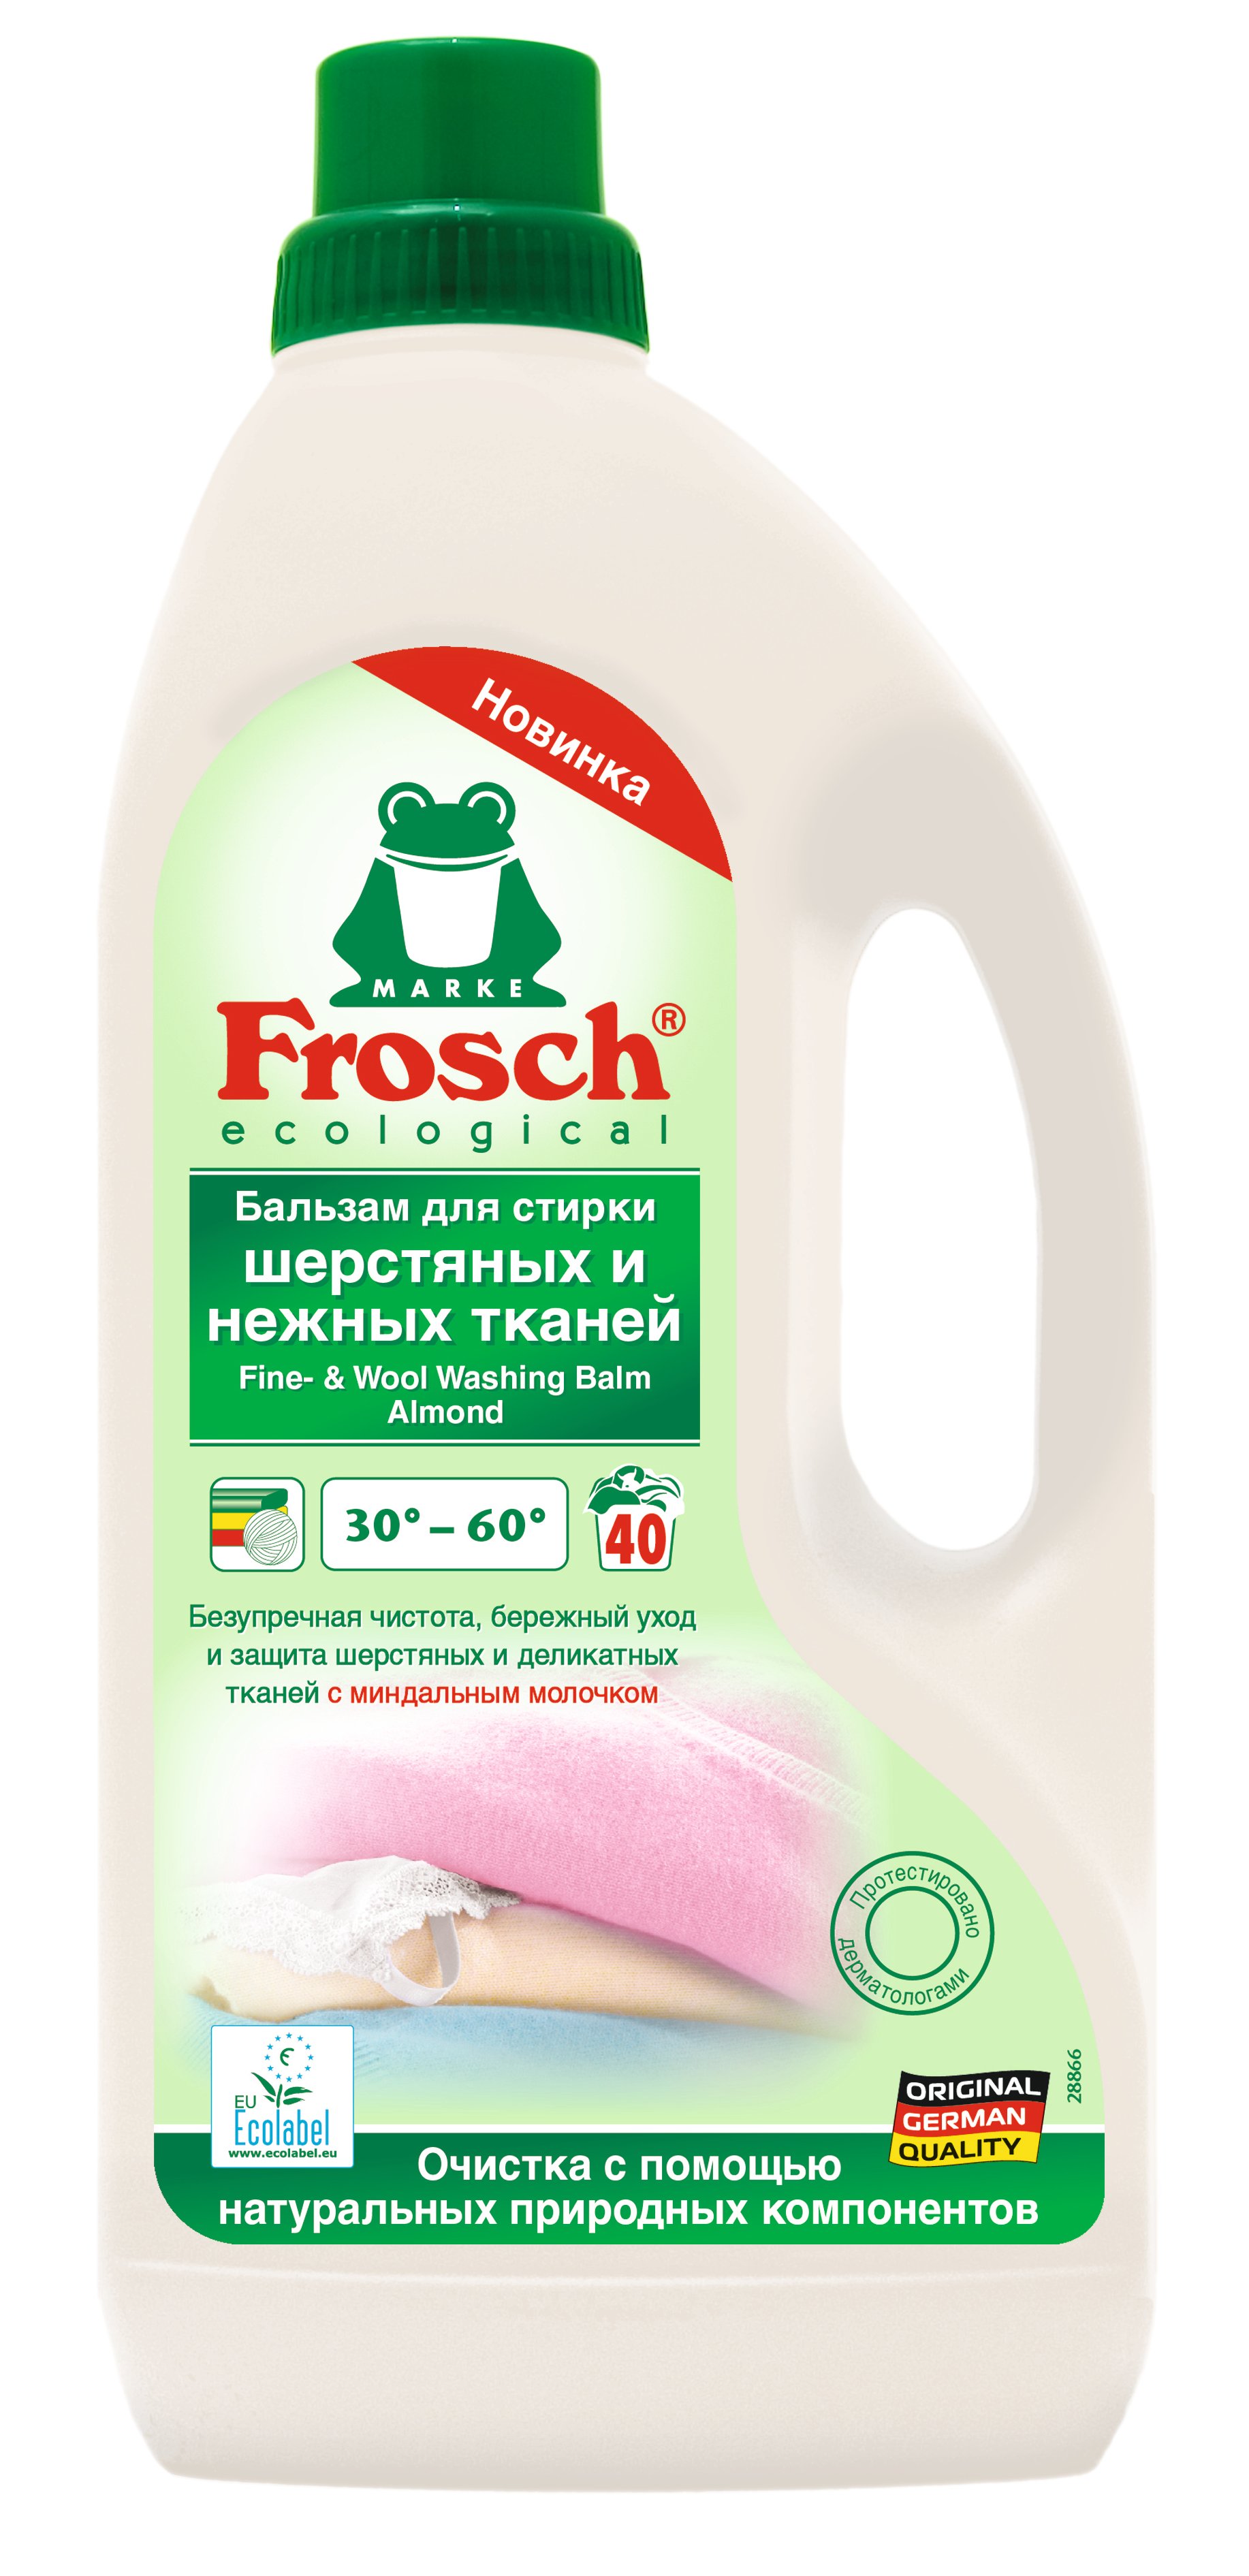 Жидкое средство для стирки Frosch Миндальное молочко, для шерсти и деликатных тканей, 1,5 л - фото 1